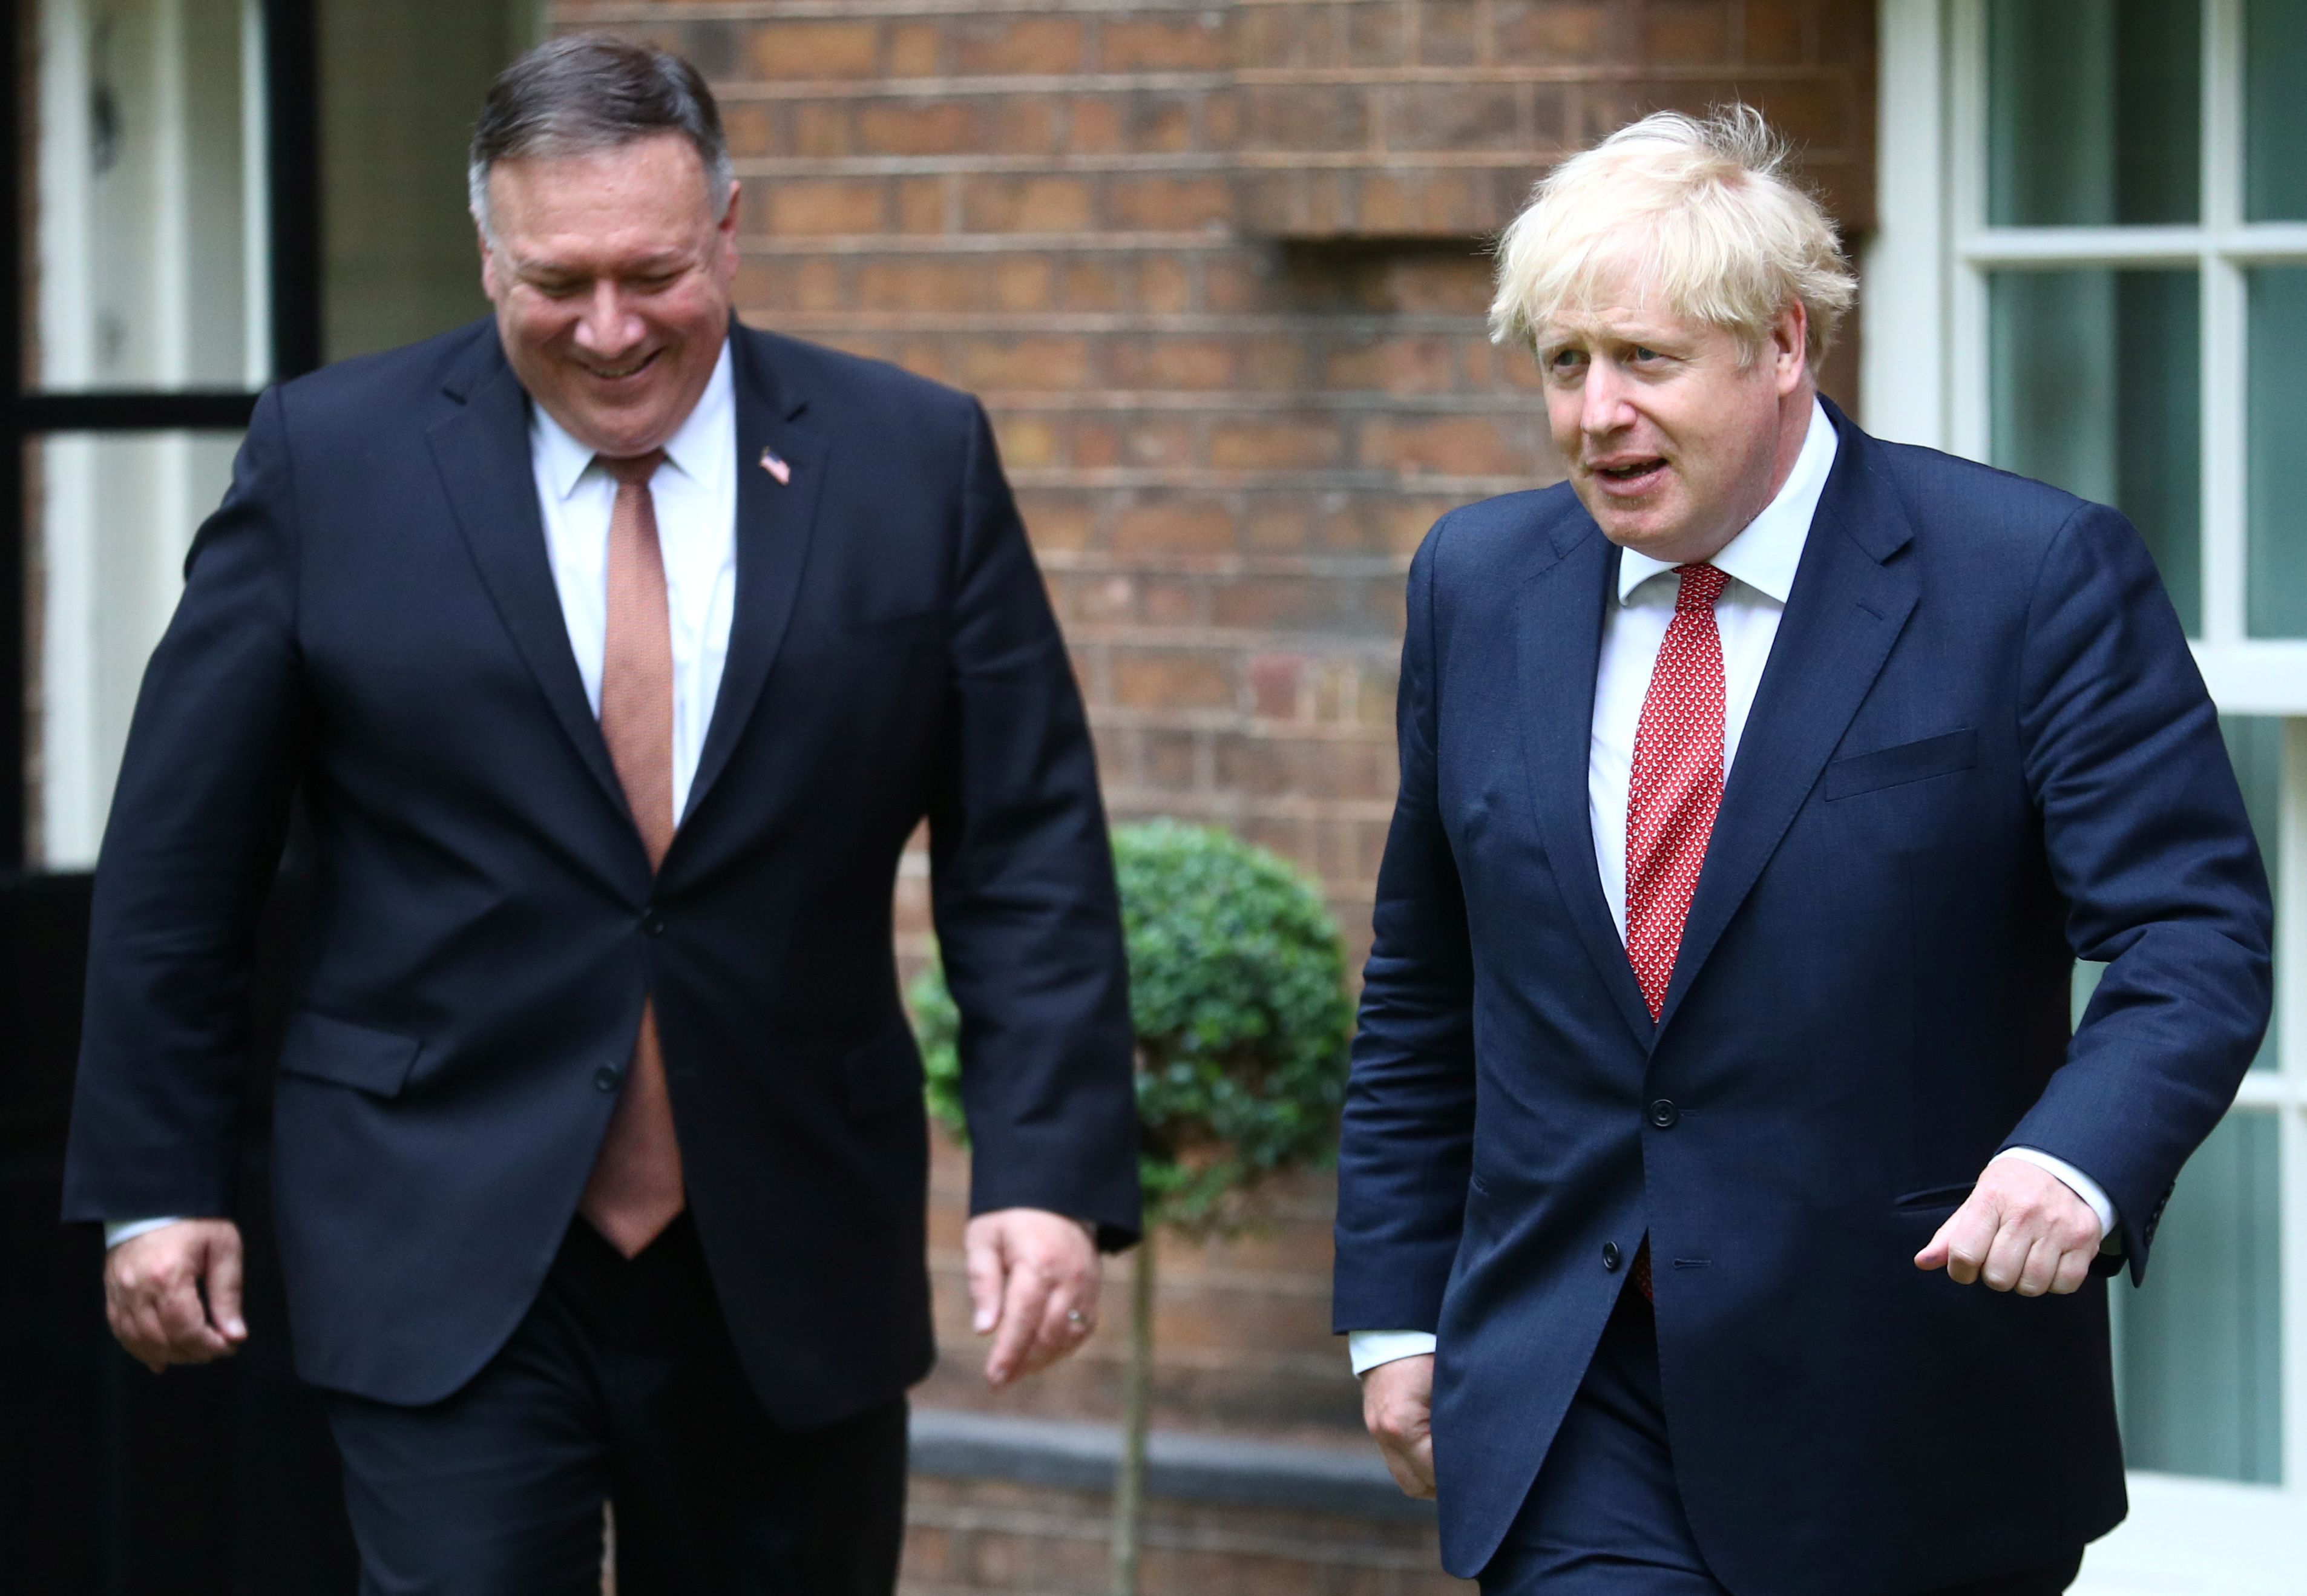 وزير الخارجية الأميركي مايك بومبيو (يسار) يحادث رئيس الوزراء البريطاني بوريس جونسون الثلاثاء في لندن